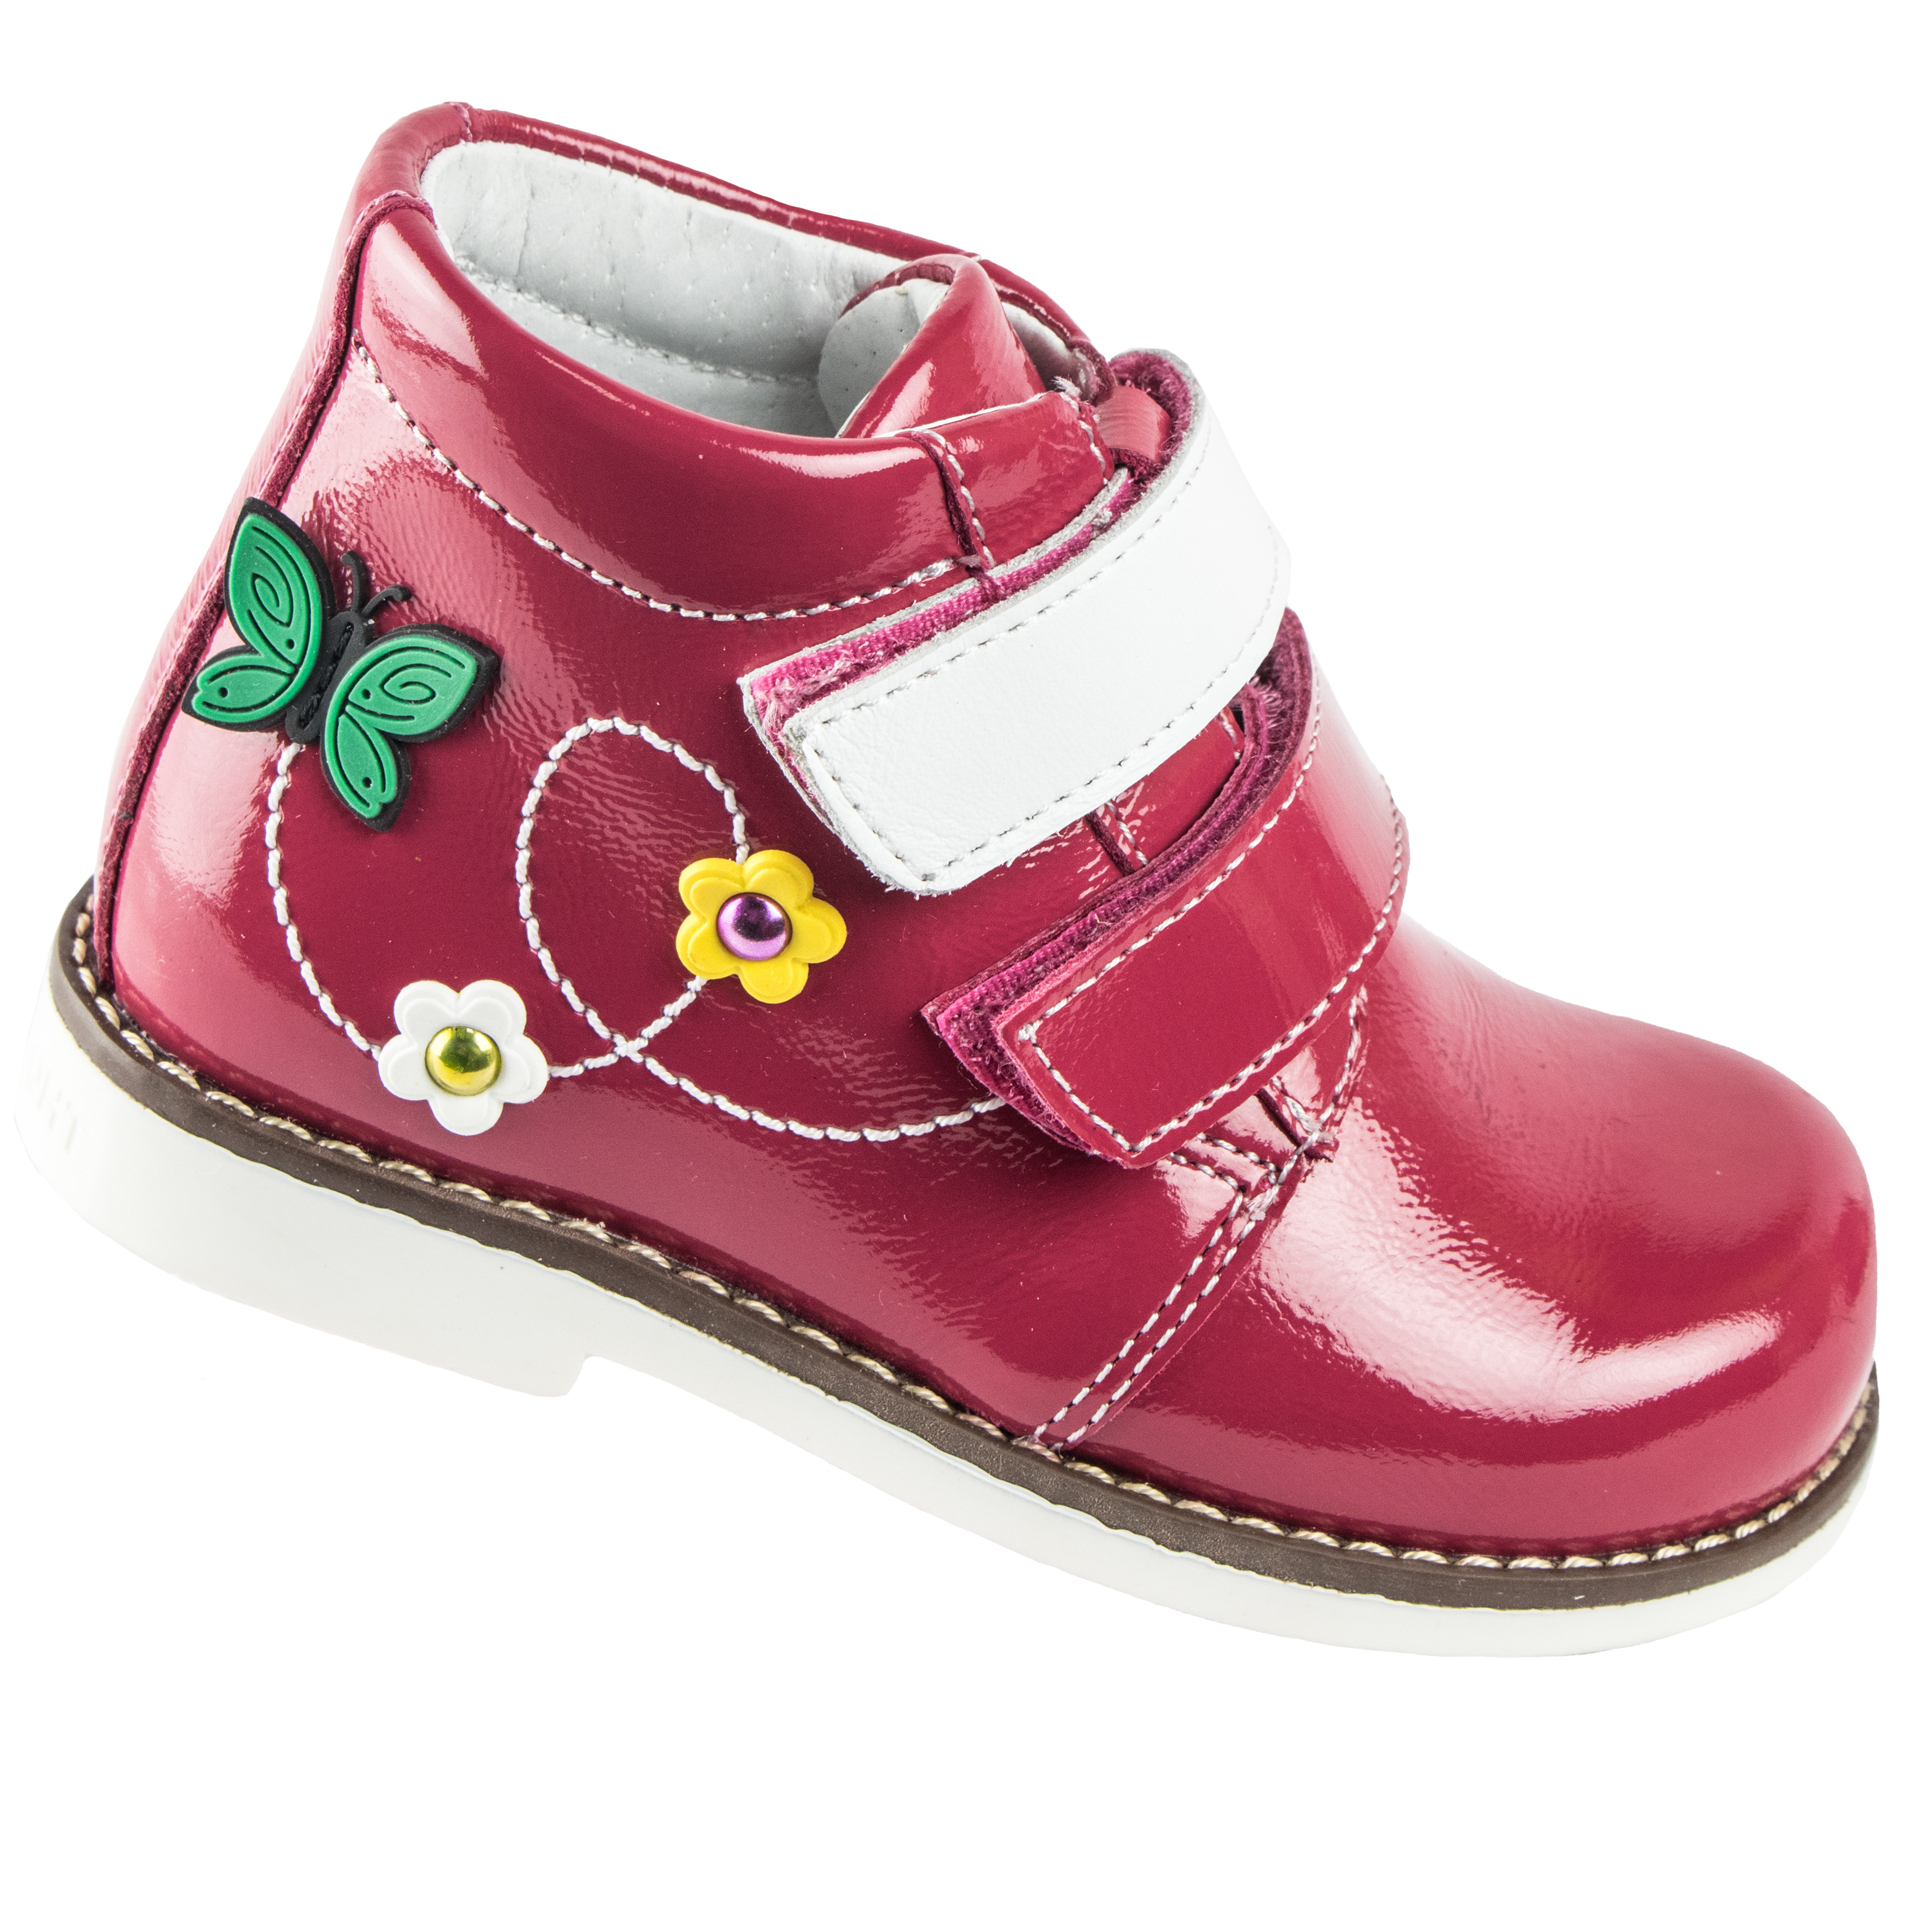 Демисезонные ботинки детские (1507) материал Лаковая кожа, цвет Красный  для девочки 23-26 размеры – Sole Kids. Фото 1